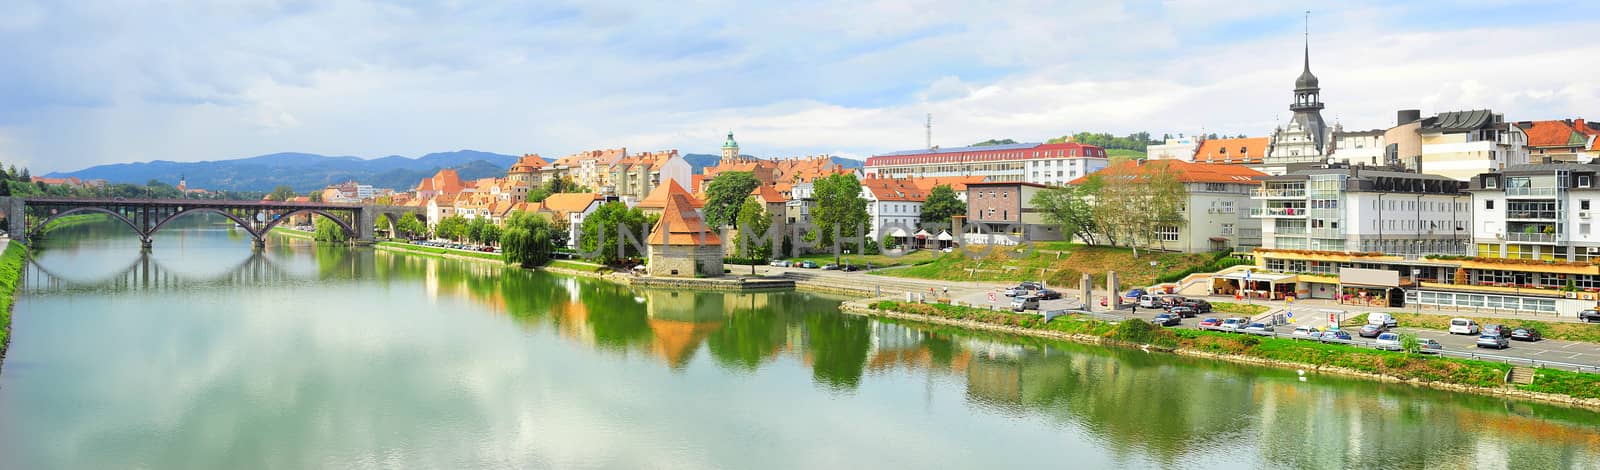 Maribor skyline by joyfull